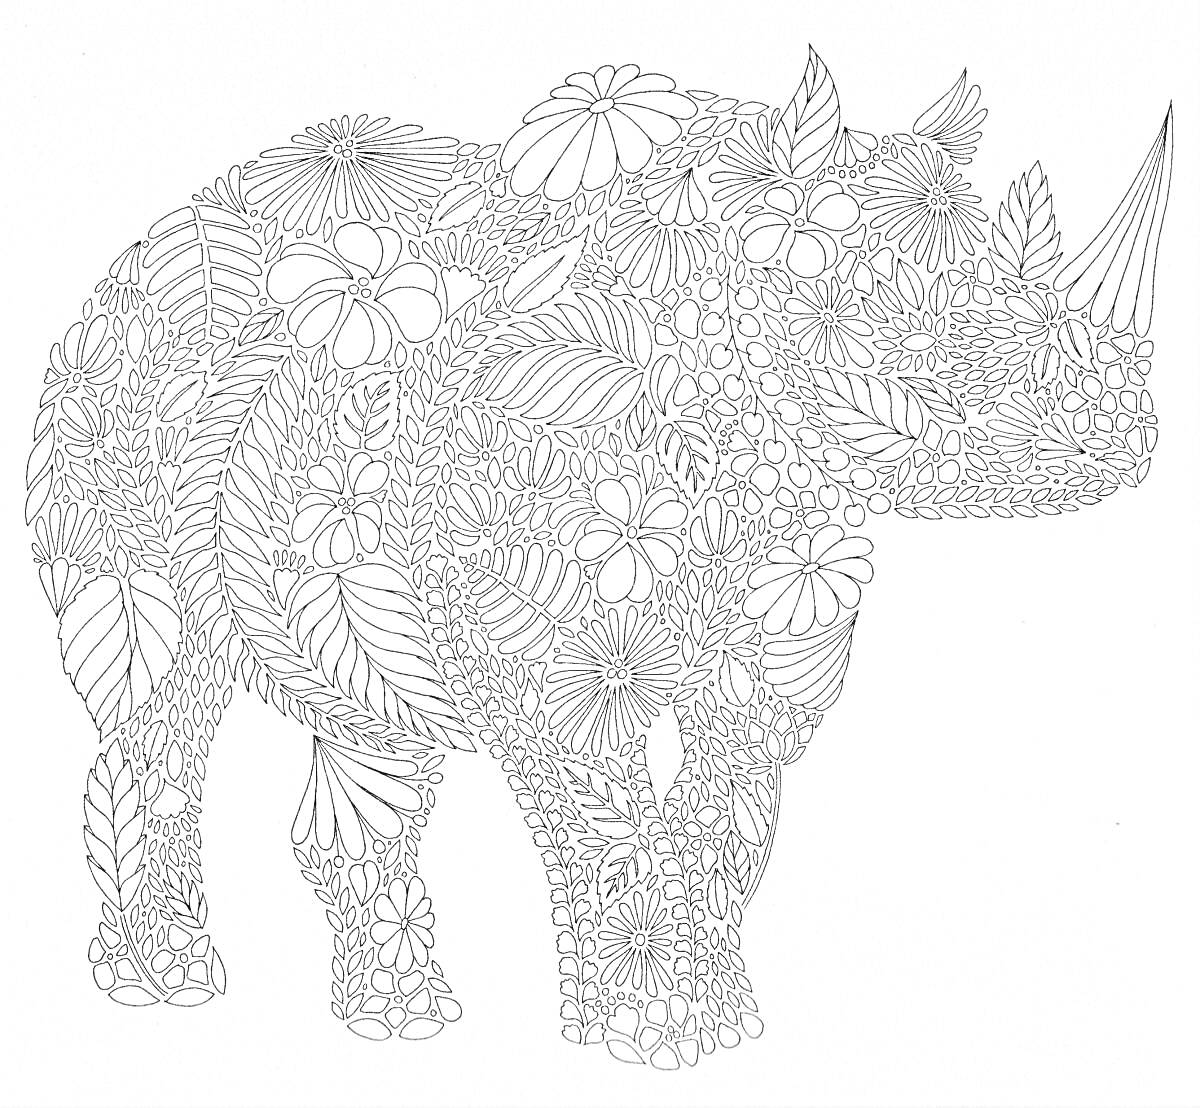 Носорог, составленный из цветков и листьев